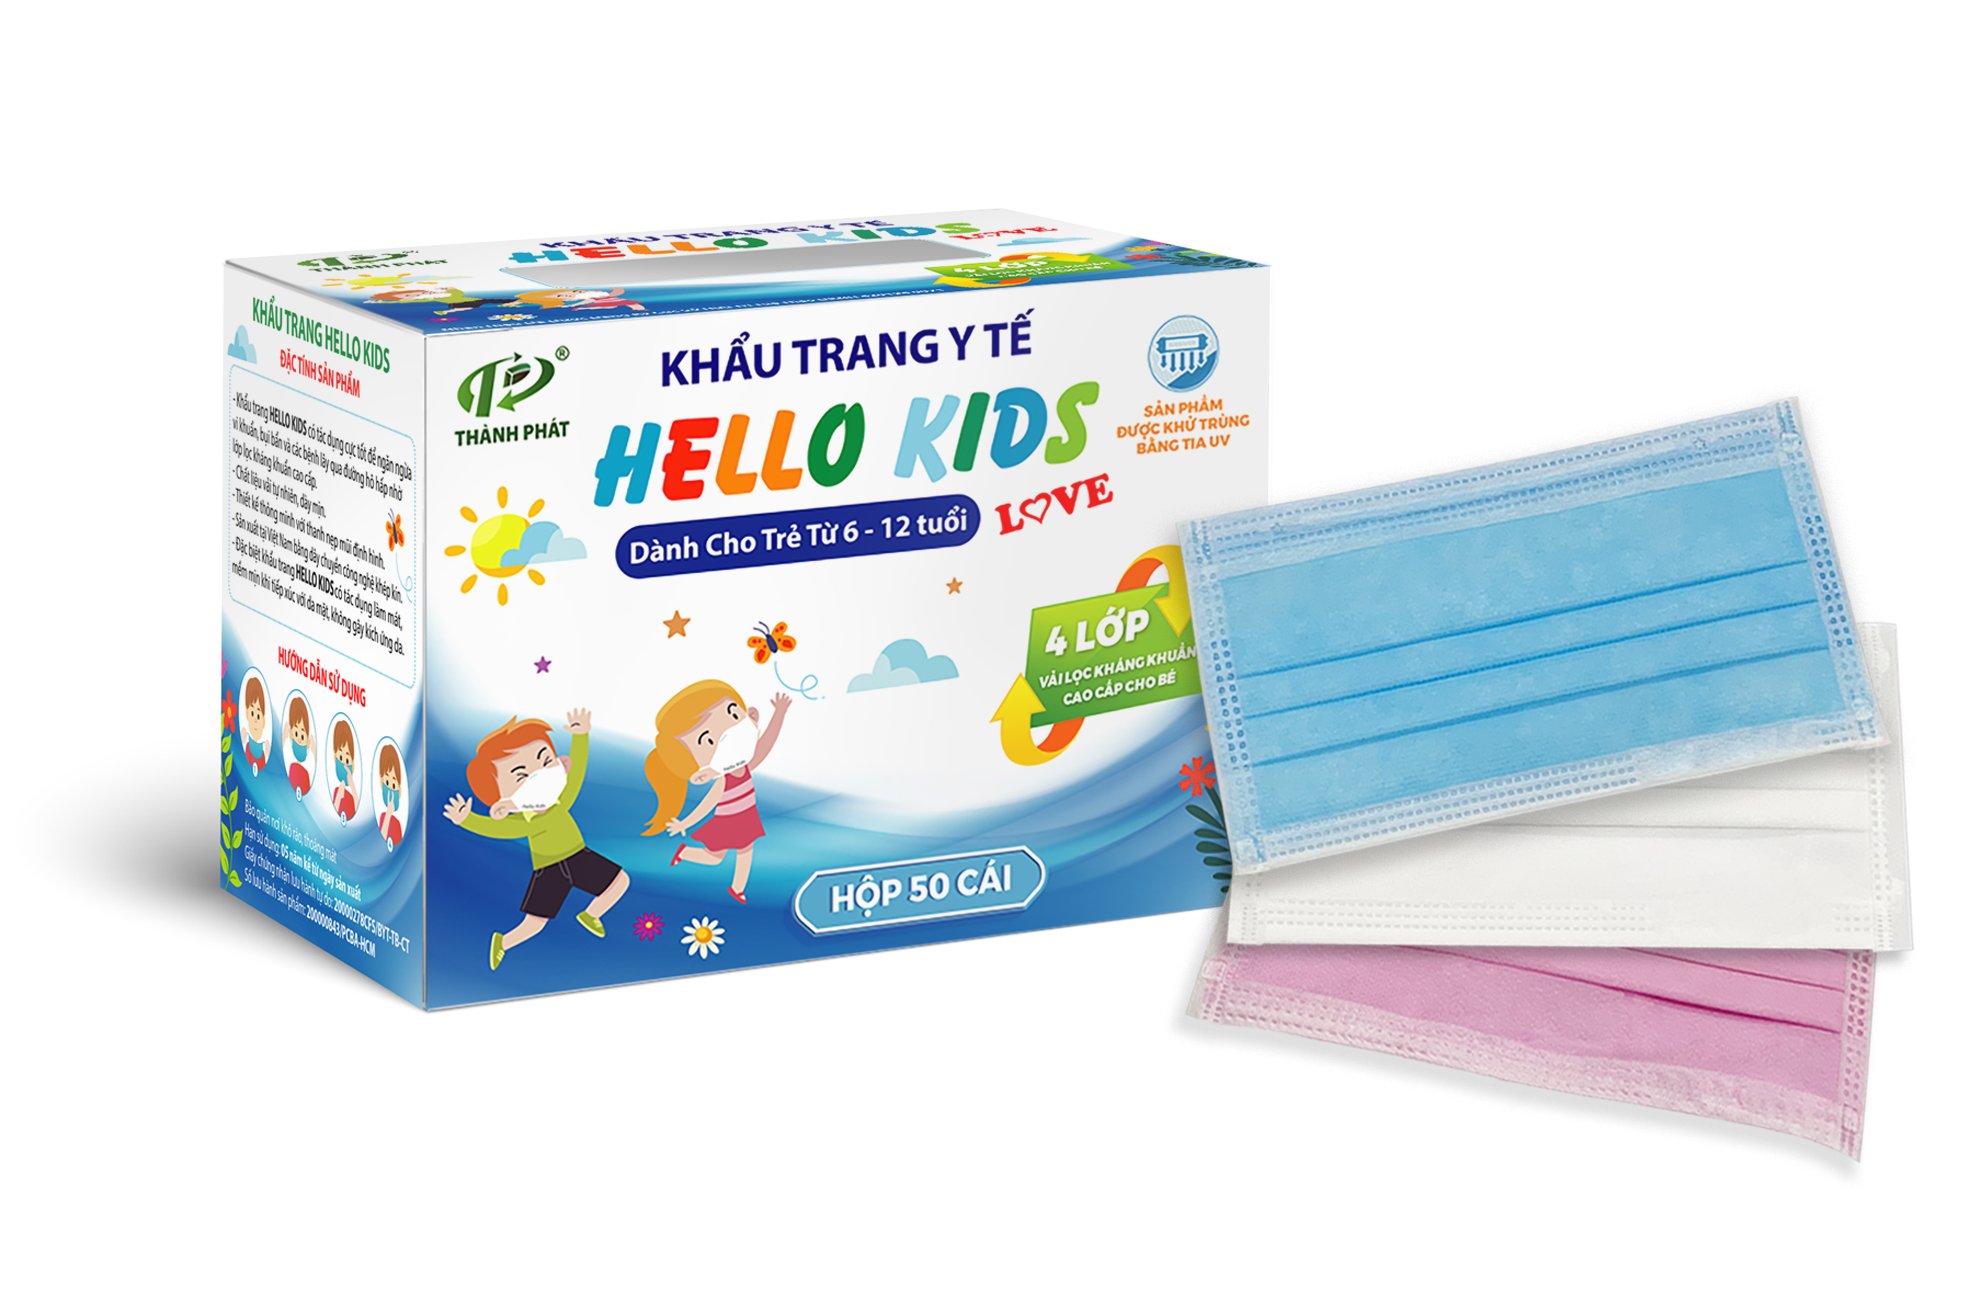 Khẩu trang Hello Kids hộp 50-mẫu mới - Khẩu Trang Y Tế Hello Mask - Vật Tư Y Tế - Công Ty TNHH Phát Triển Xuất Nhập Khẩu Thành Phát